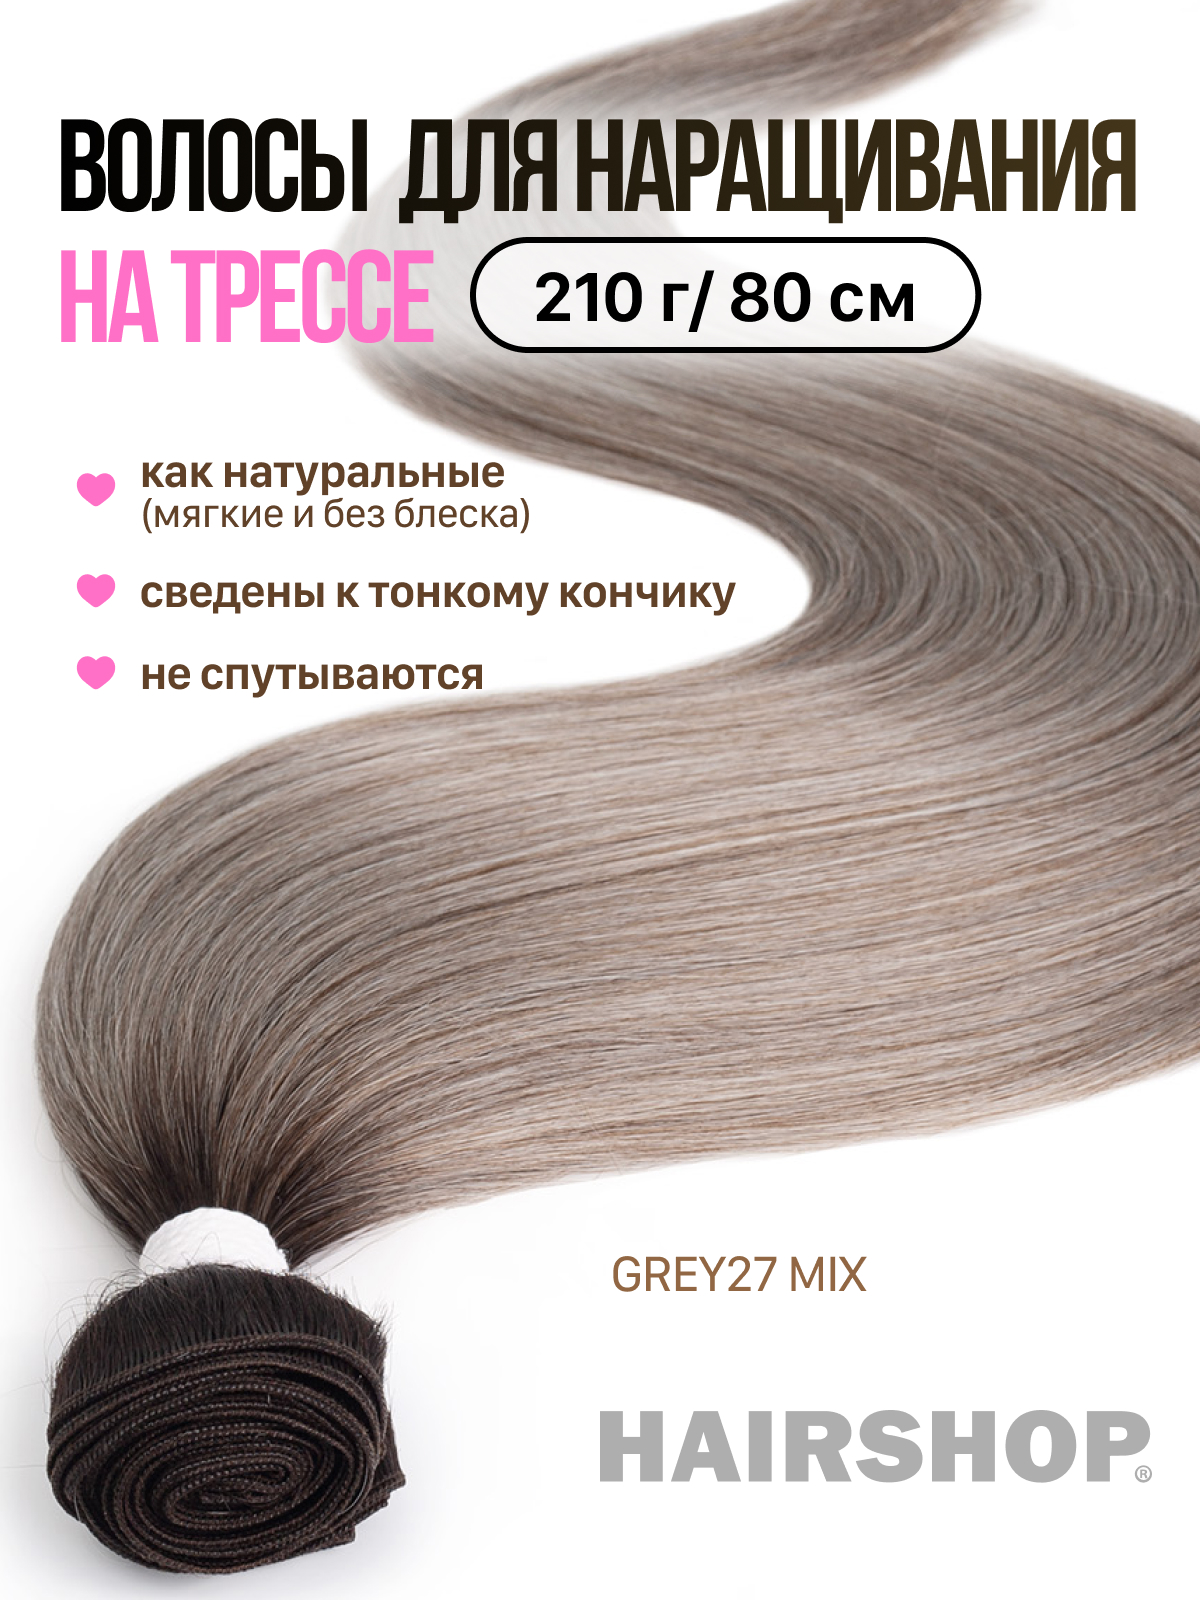 Термоволокно Hairshop Вандер на трессах GREY27 MIX 210г 80см